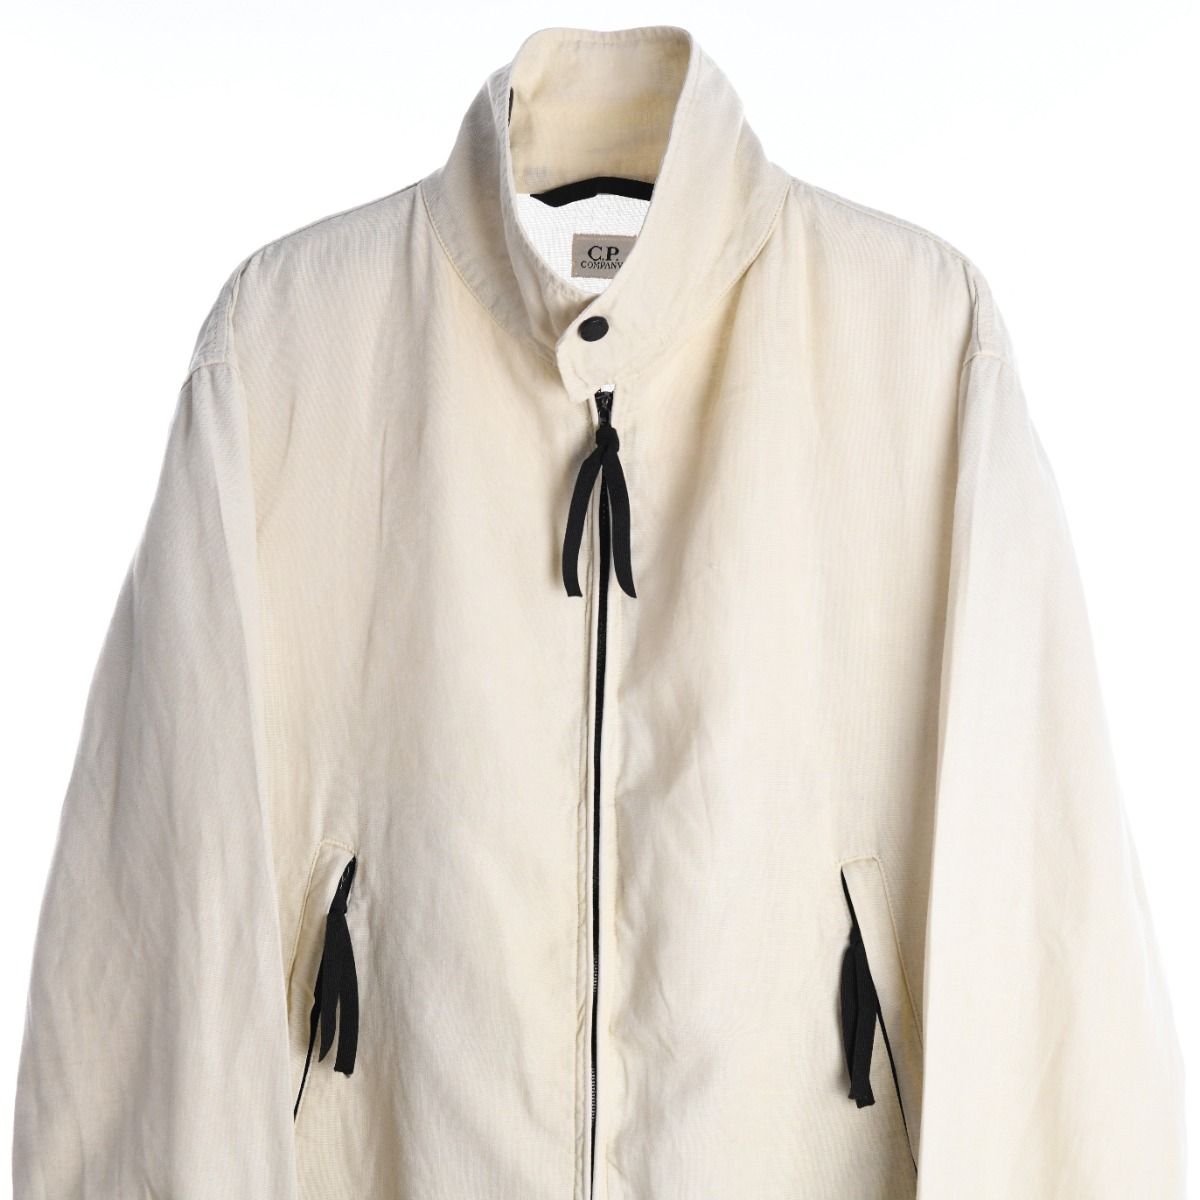 CP Company SS 1999 Linen Jacket